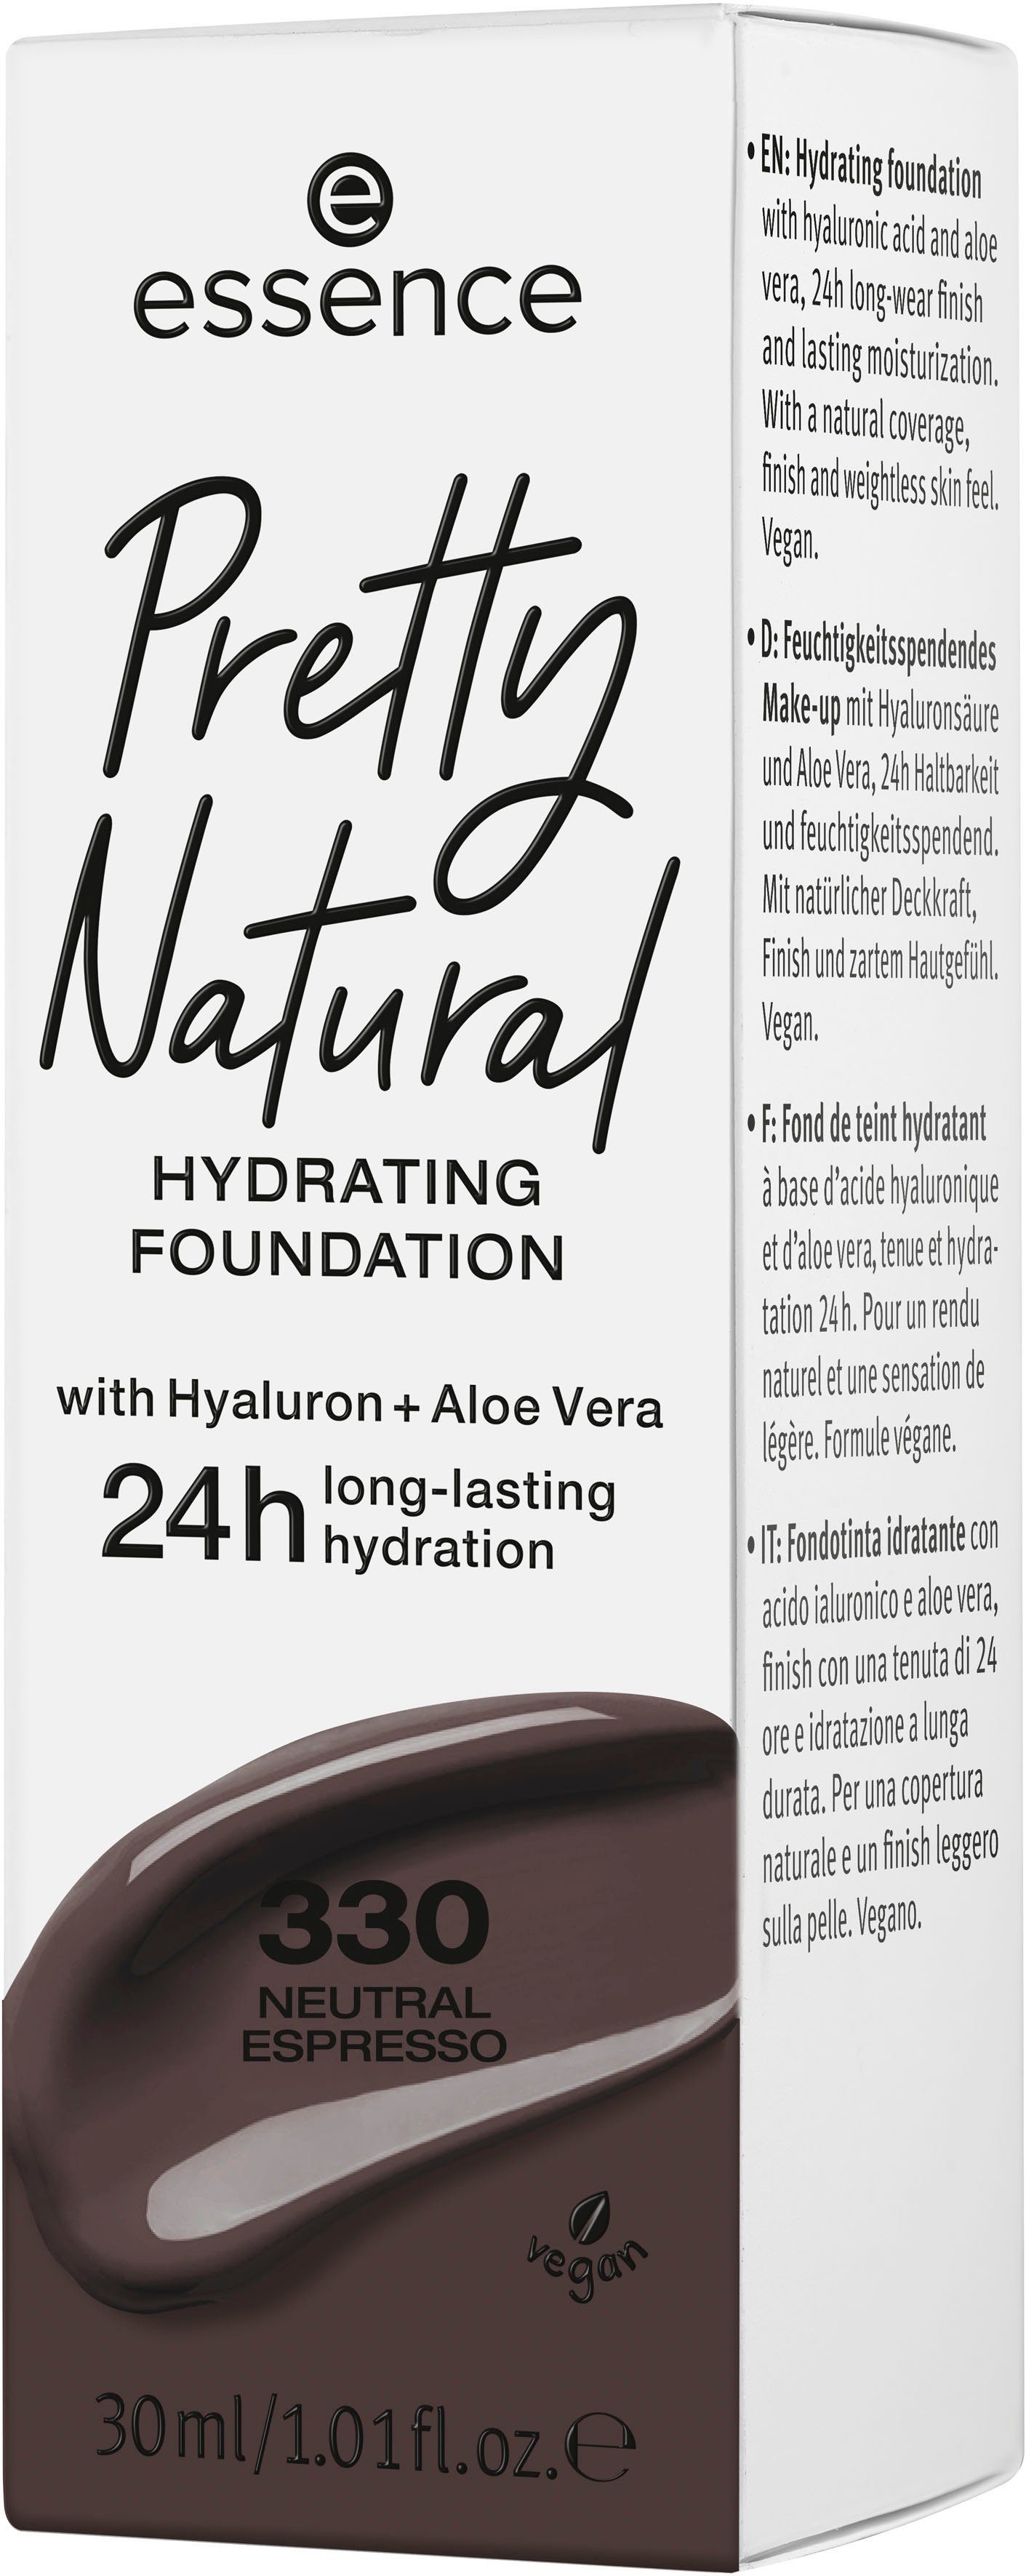 Natural Foundation 3-tlg. Neutral Pretty HYDRATING, Essence Espresso